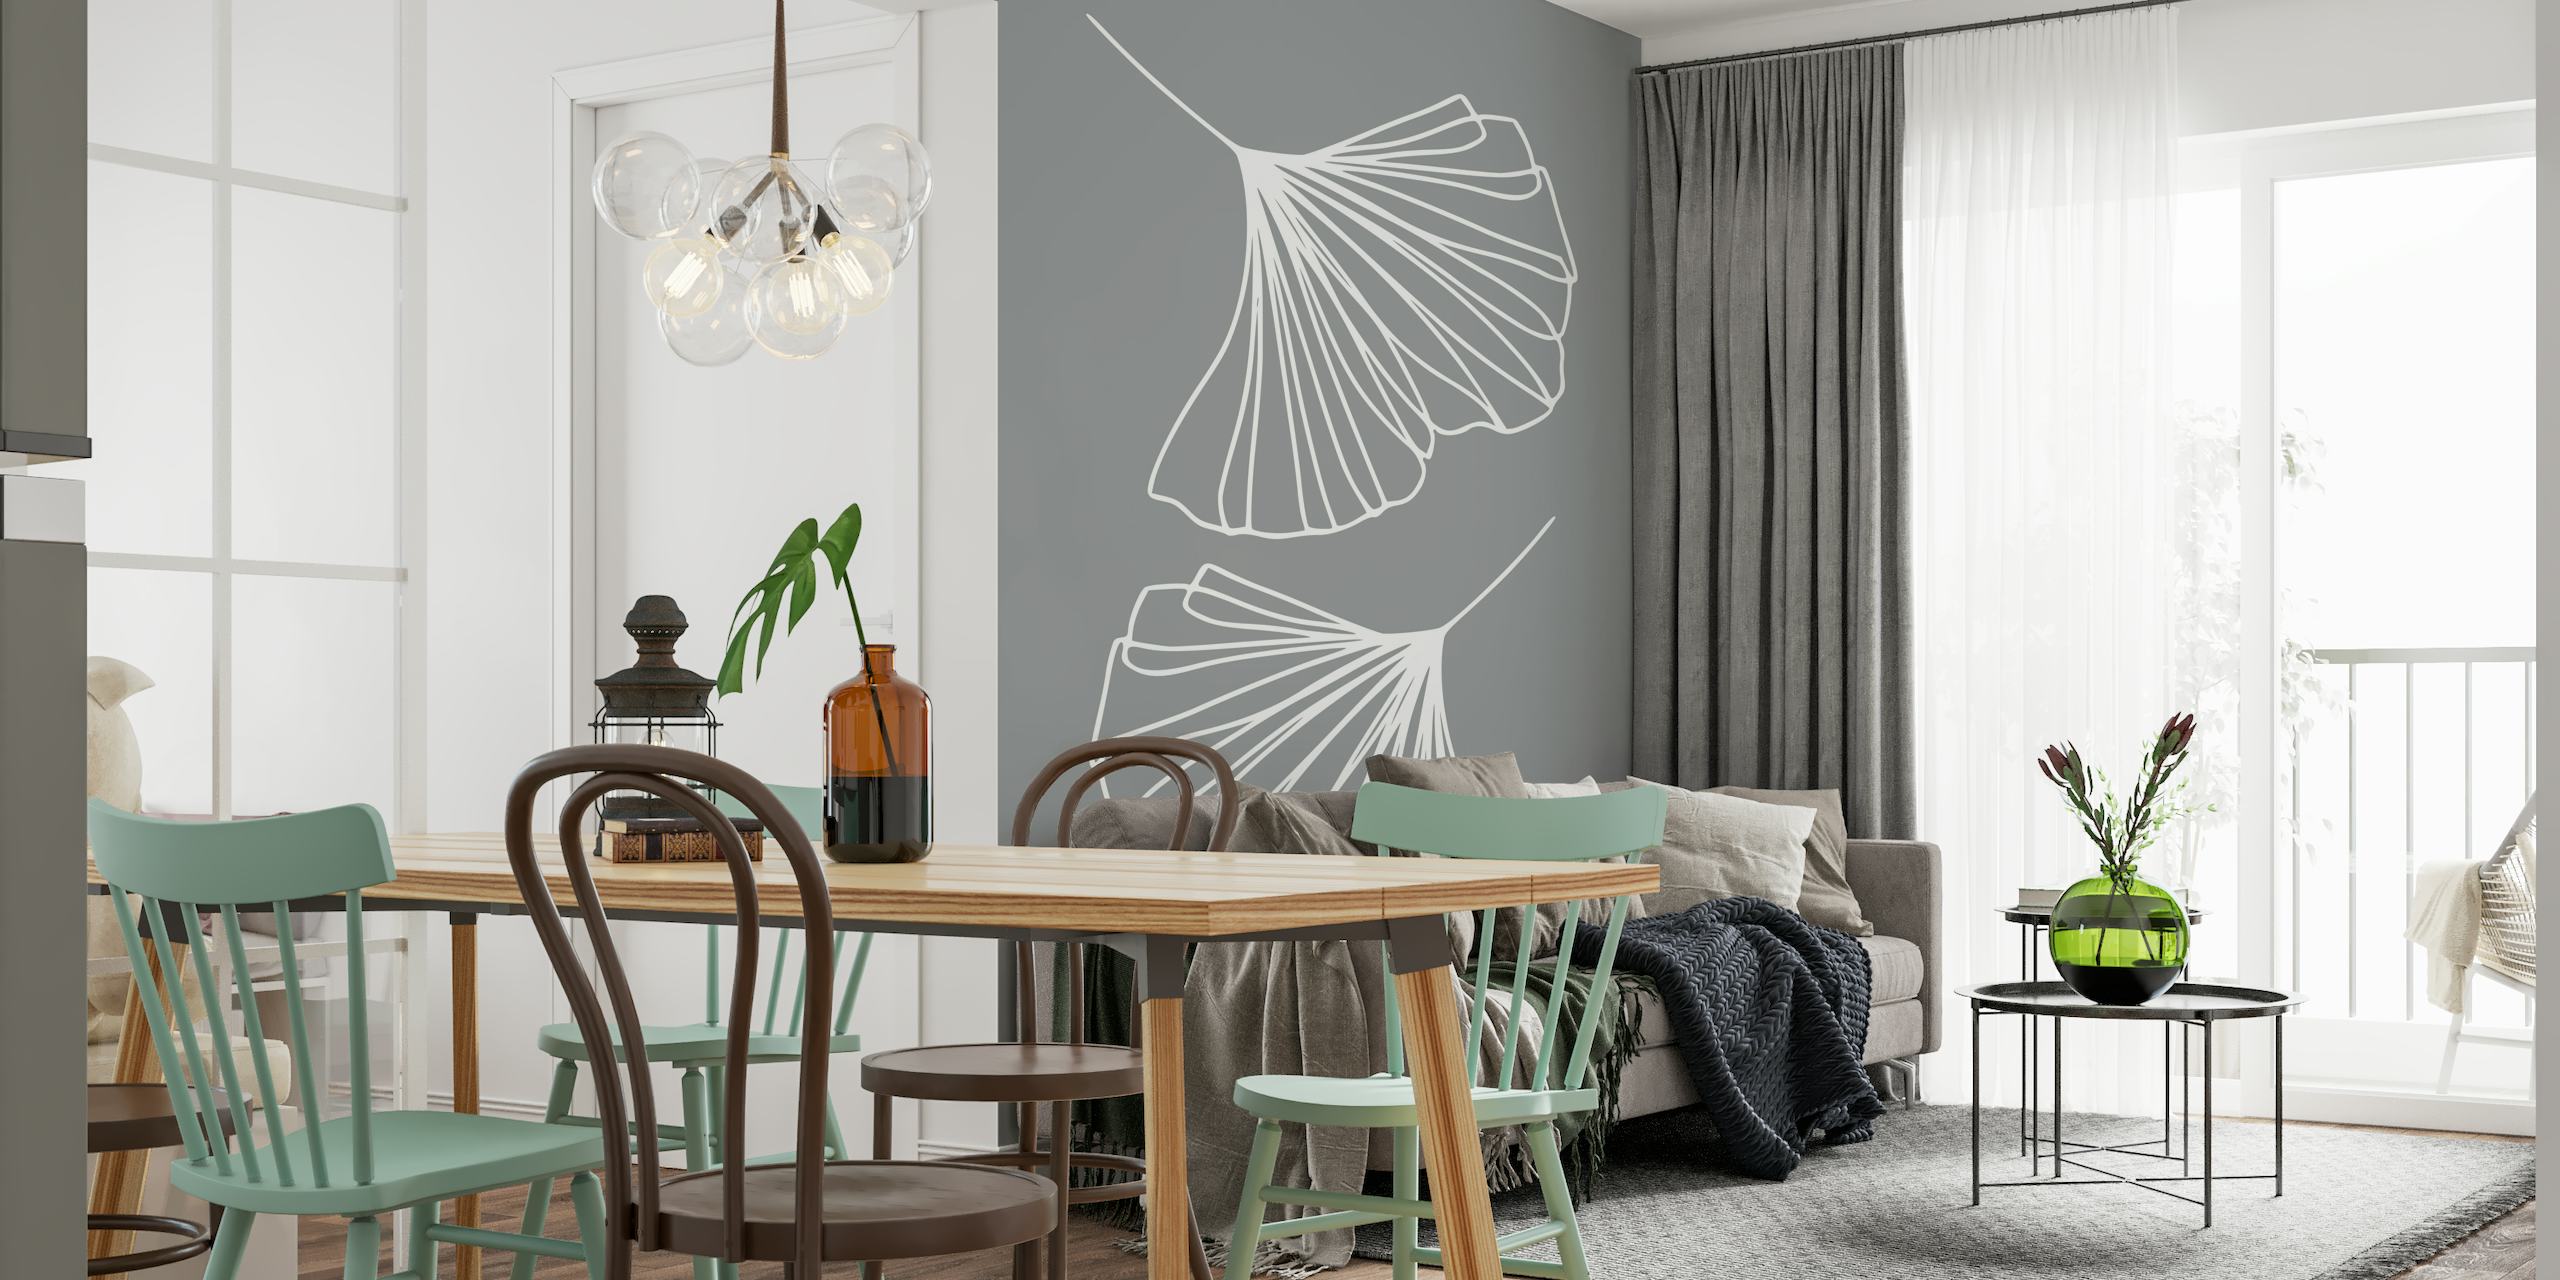 Ginkgo Leaves Ultimate Grey muurschildering met witte lijntekeningen op grijze achtergrond